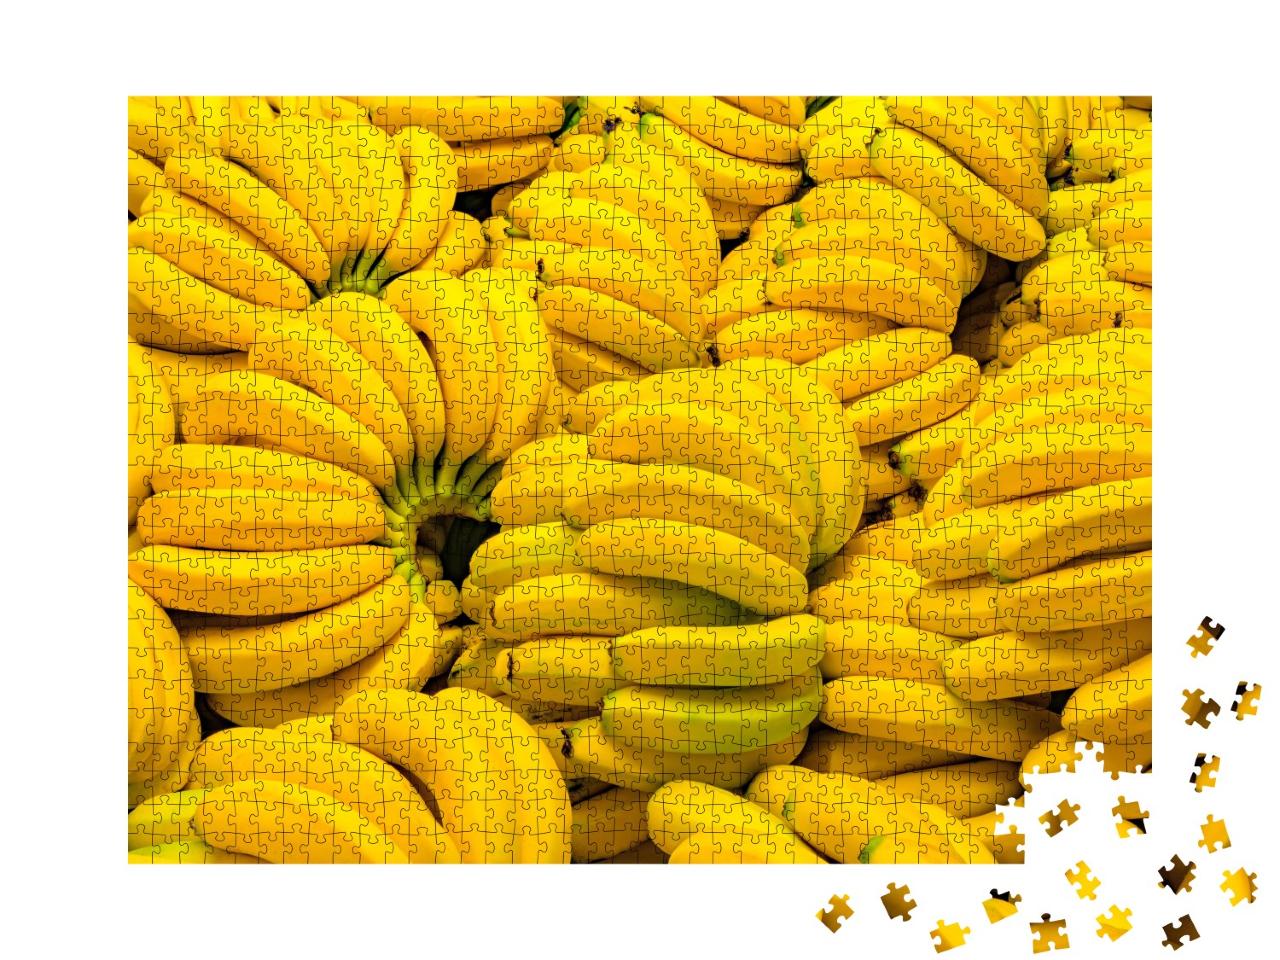 Puzzle de 1000 pièces « Banane fraîche sur le marché aux fruits »